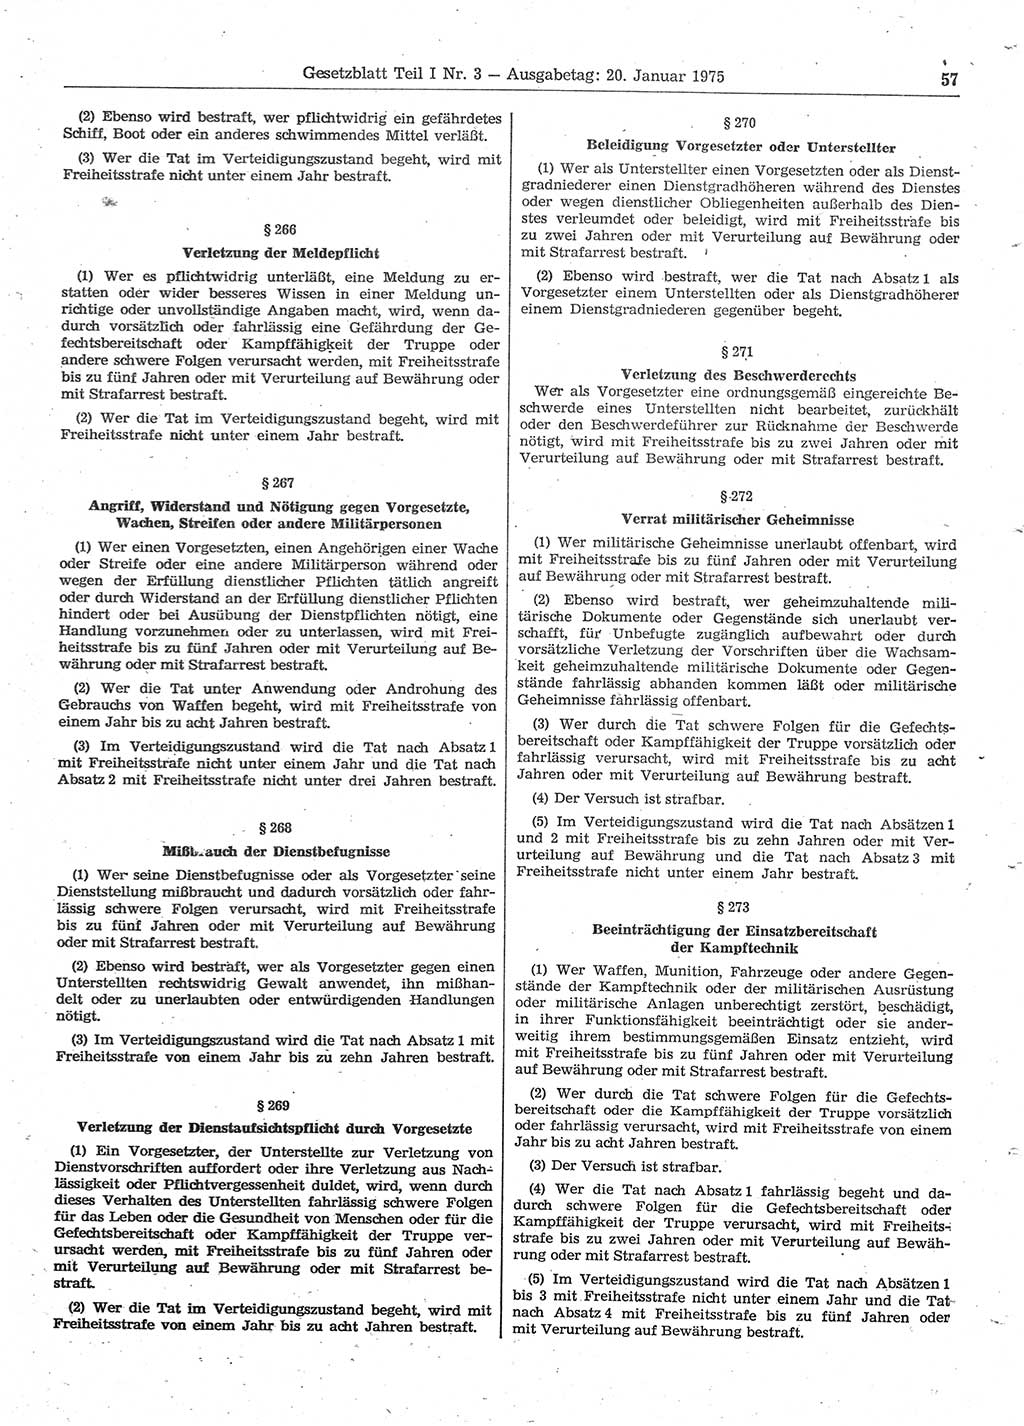 Gesetzblatt (GBl.) der Deutschen Demokratischen Republik (DDR) Teil Ⅰ 1975, Seite 57 (GBl. DDR Ⅰ 1975, S. 57)